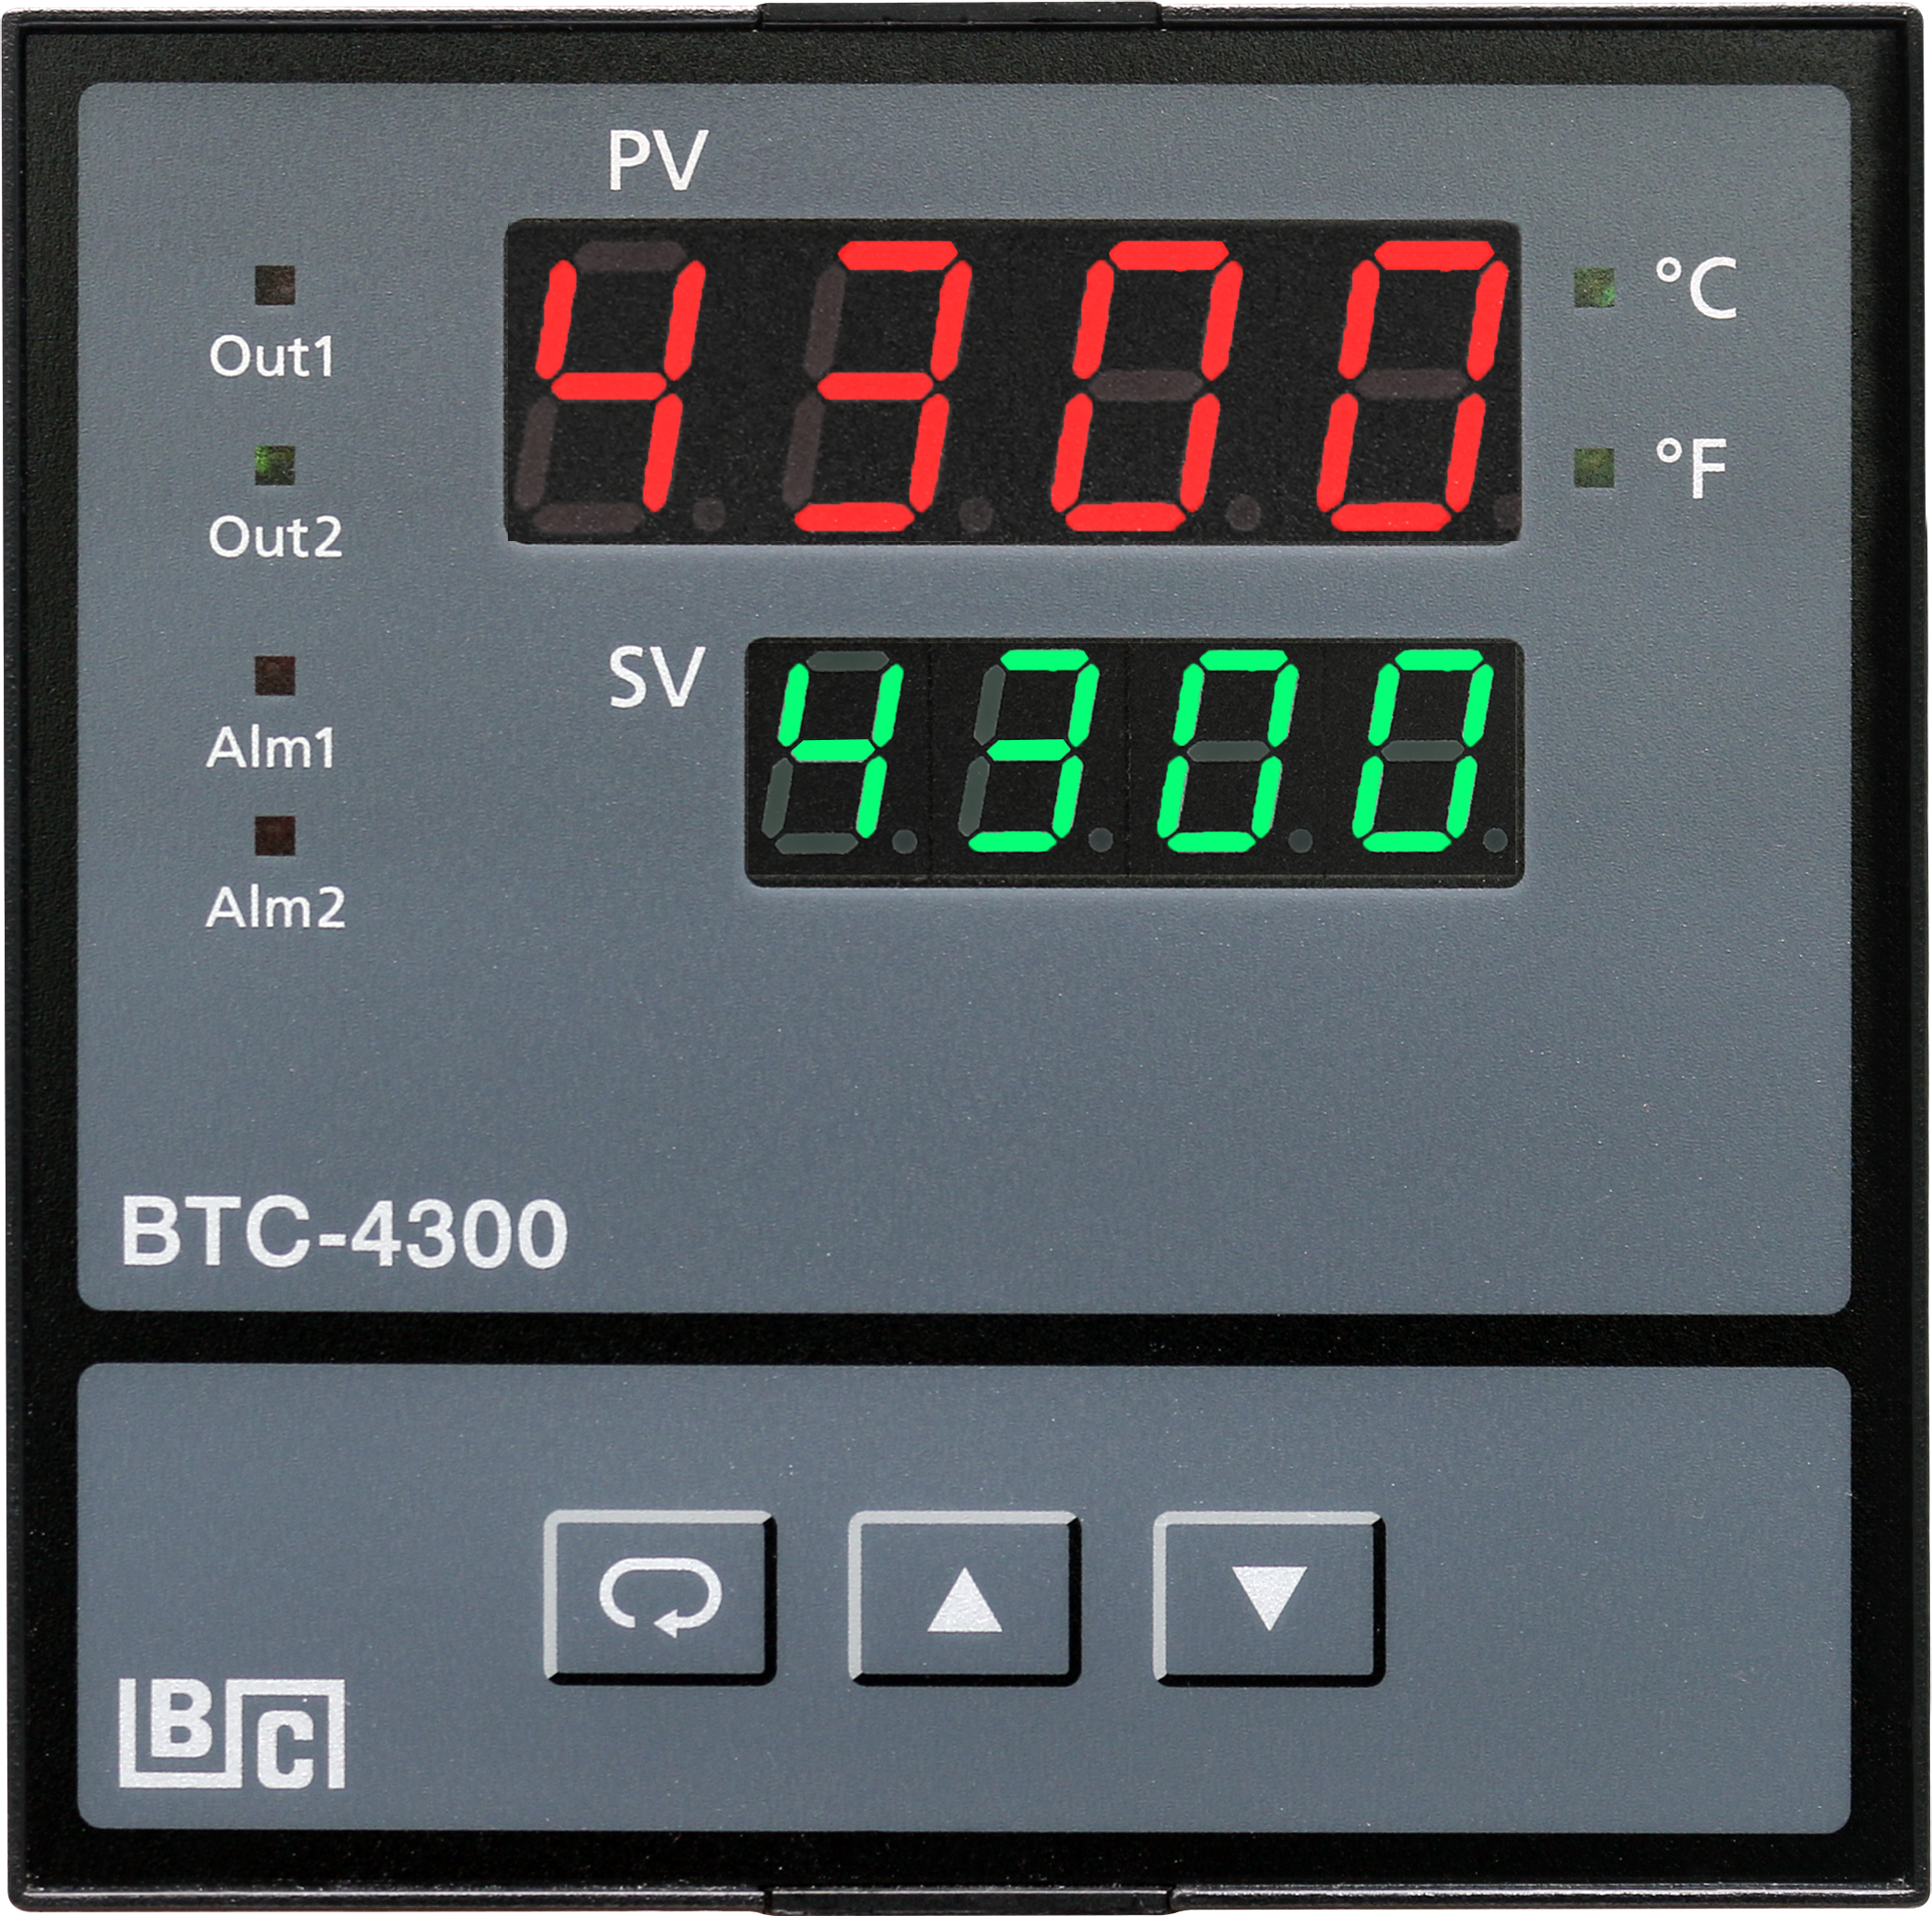 BTC-4300​高效能PID控制器​